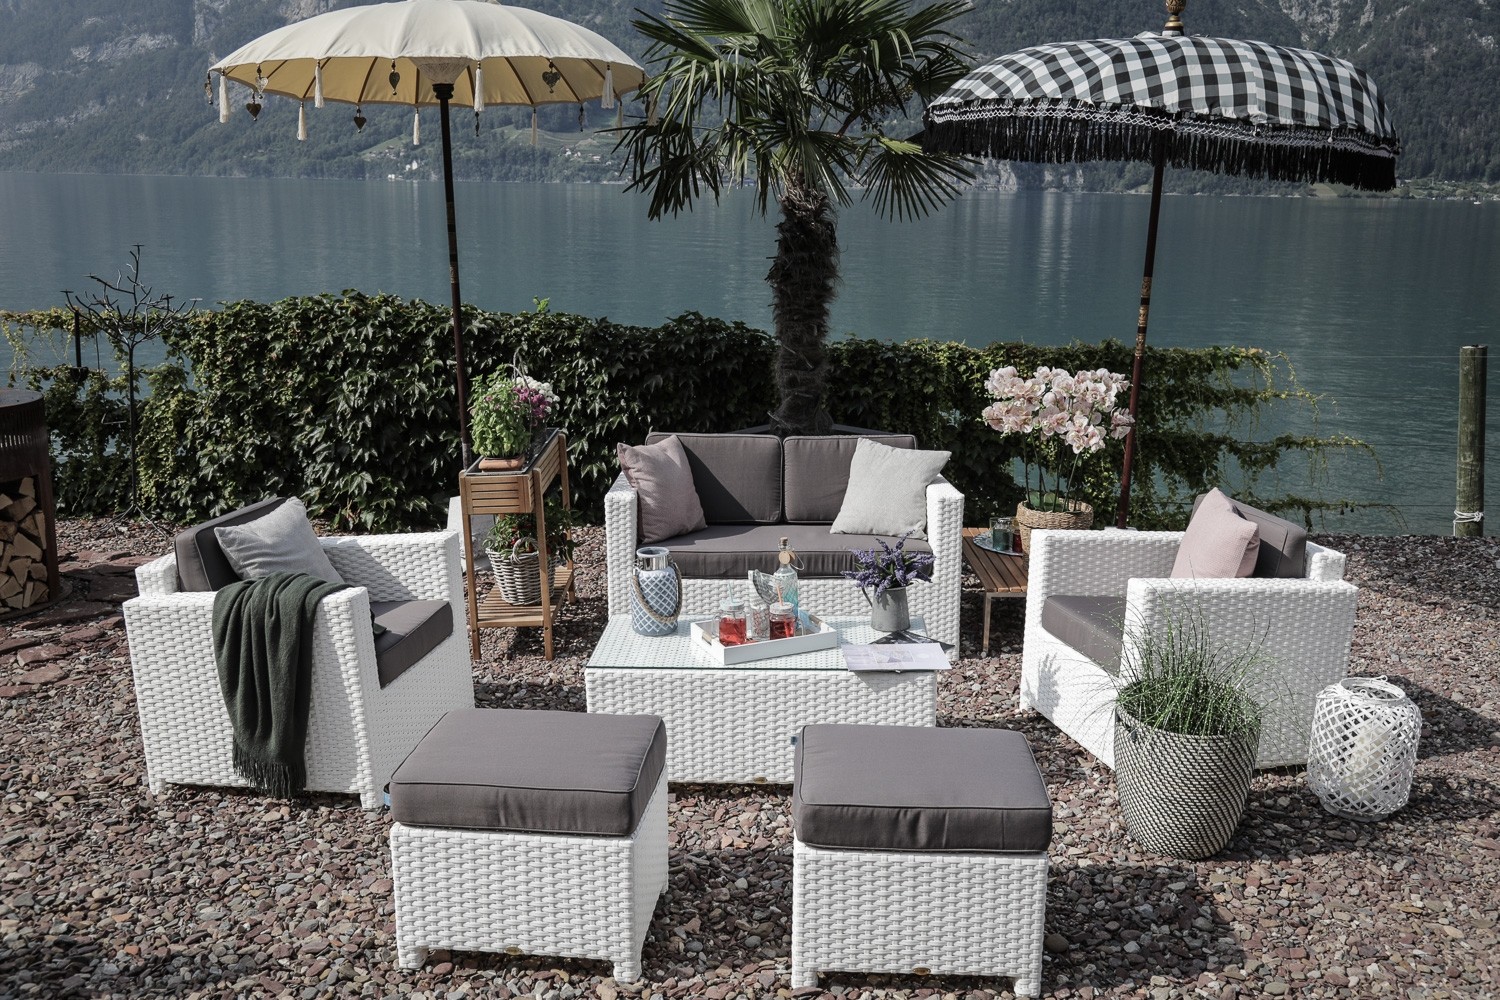 Edle Rattan Lounge in weiss - romantisch und gemütliche Gartenmöbel für